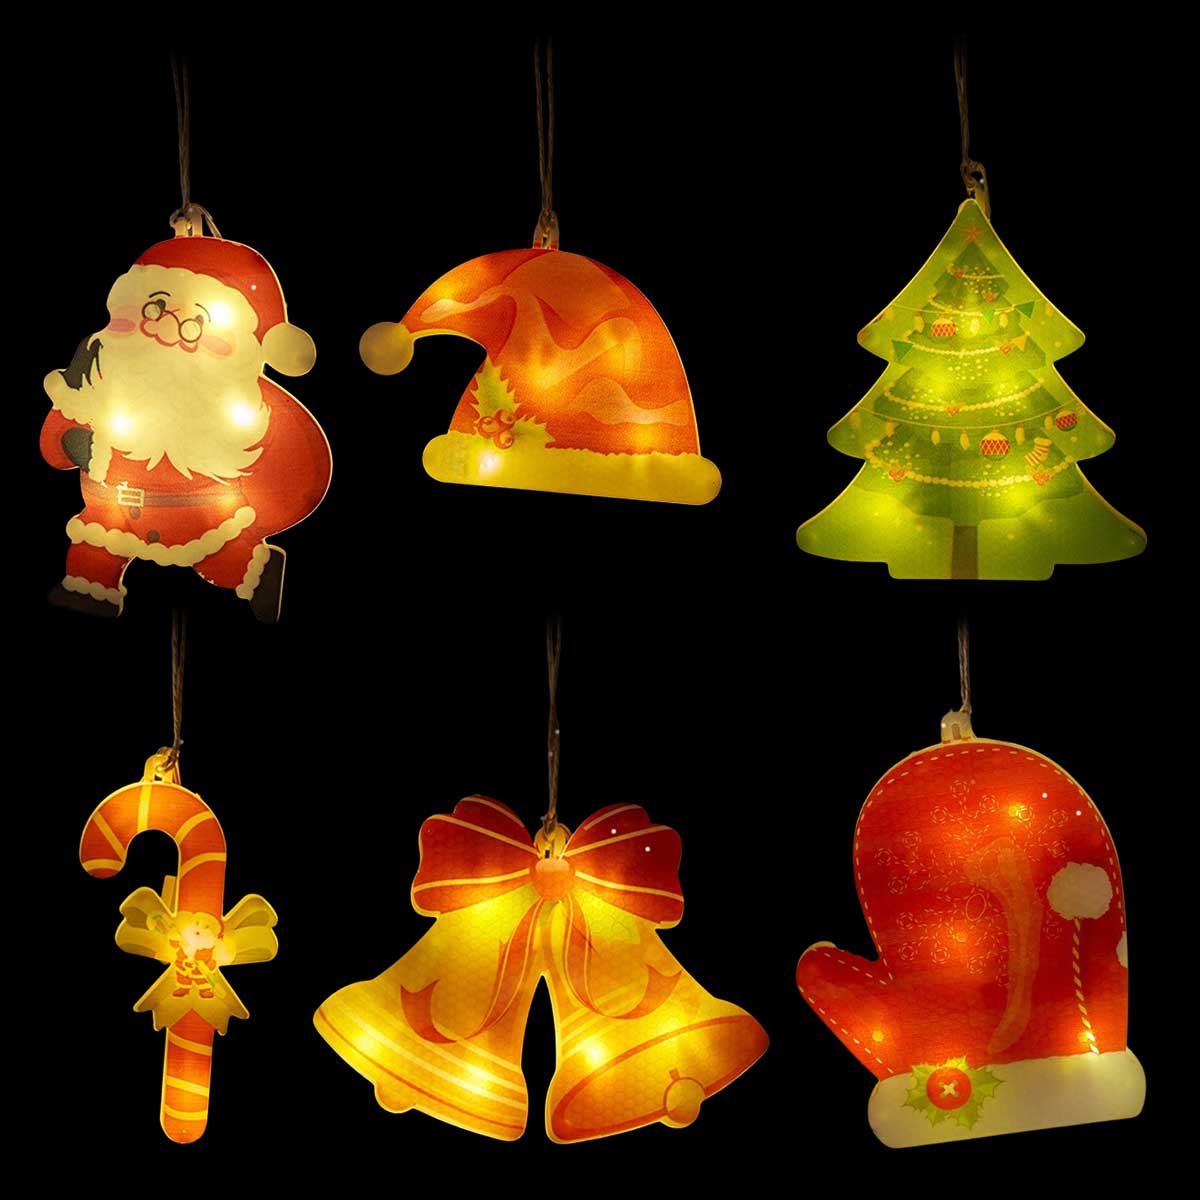 【在庫処分セール】【6点セット】クリスマス 飾り クリスマスツリー オーナメント LED ライト サンタクロース 雑貨 ツリー 飾り付け インテリア 装飾